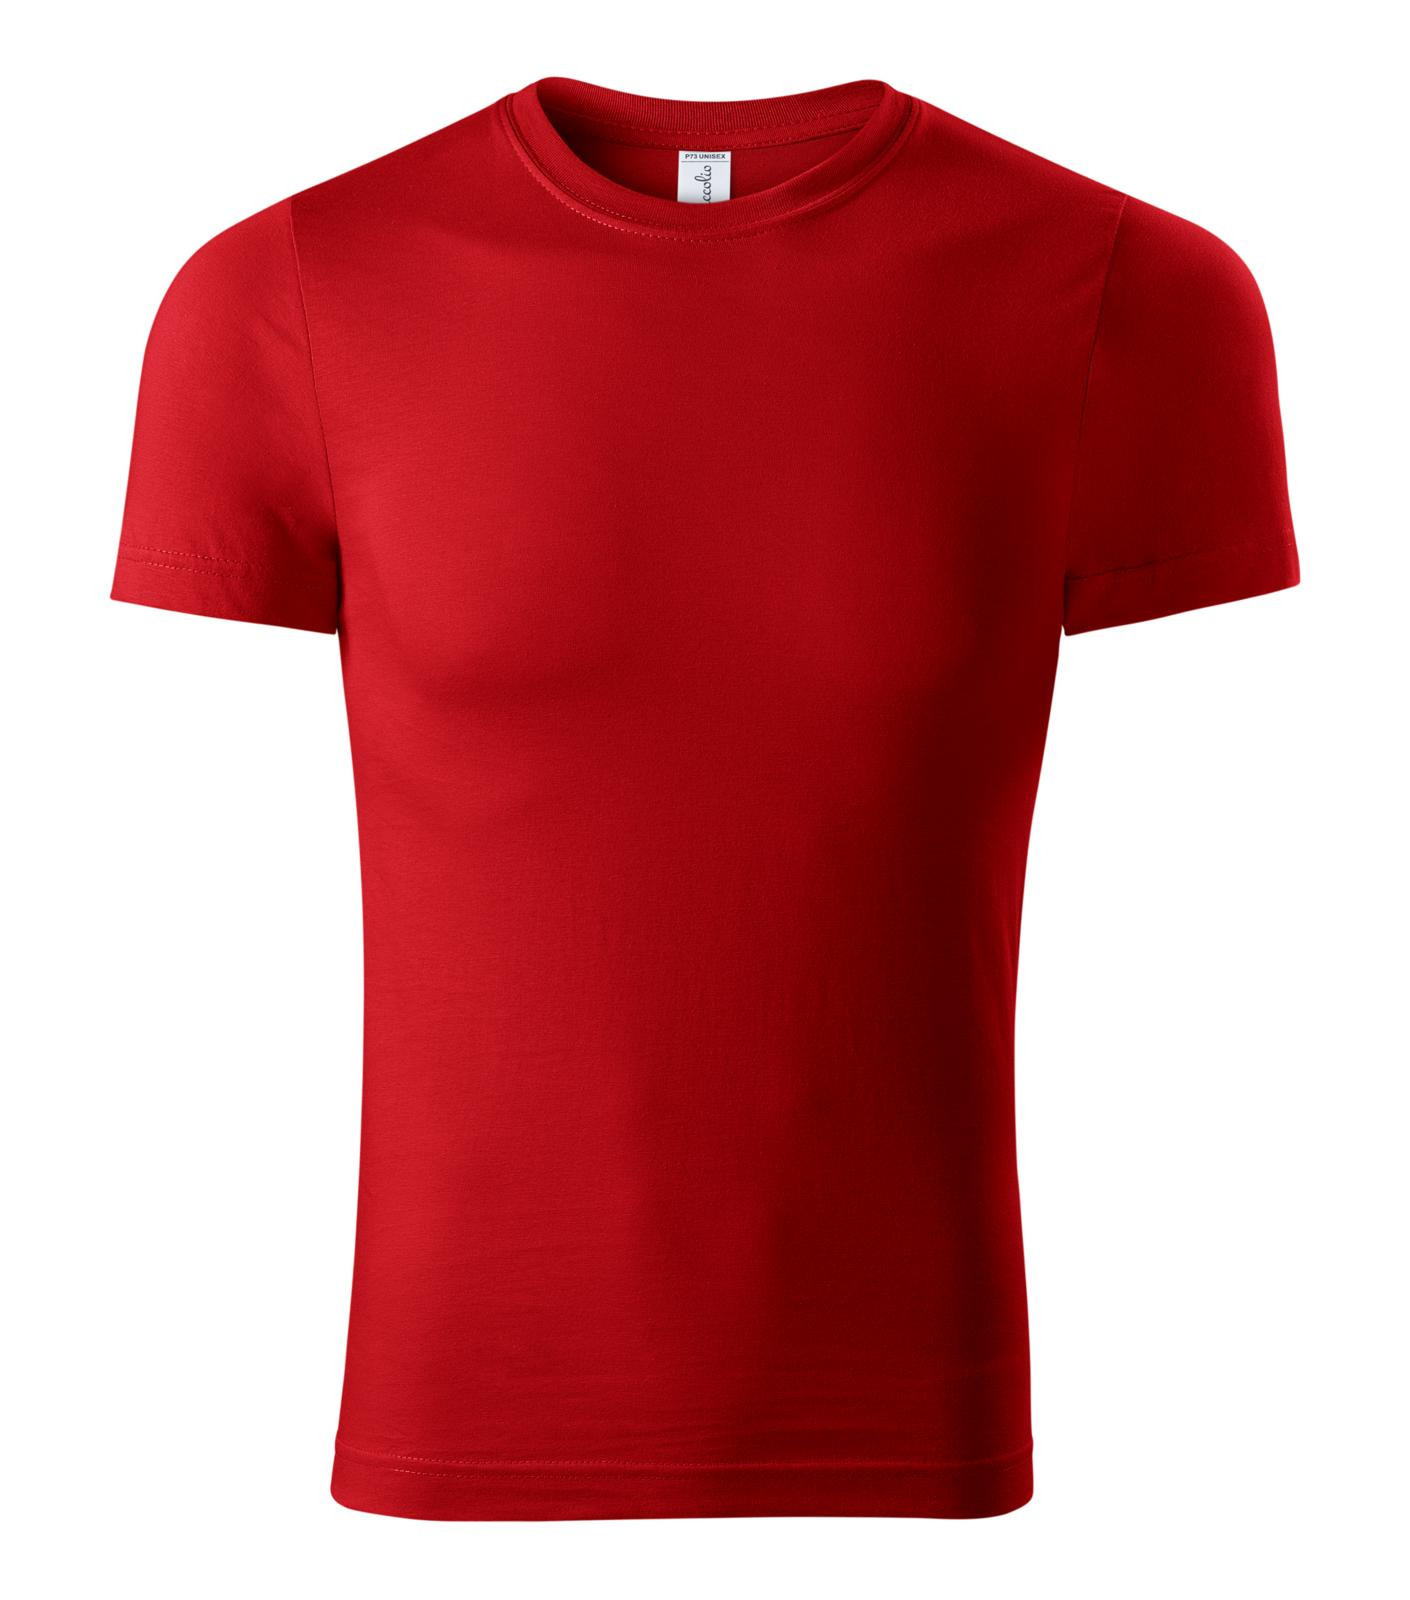 Unisex tričko Piccolio Paint P73 - veľkosť: S, farba: červená